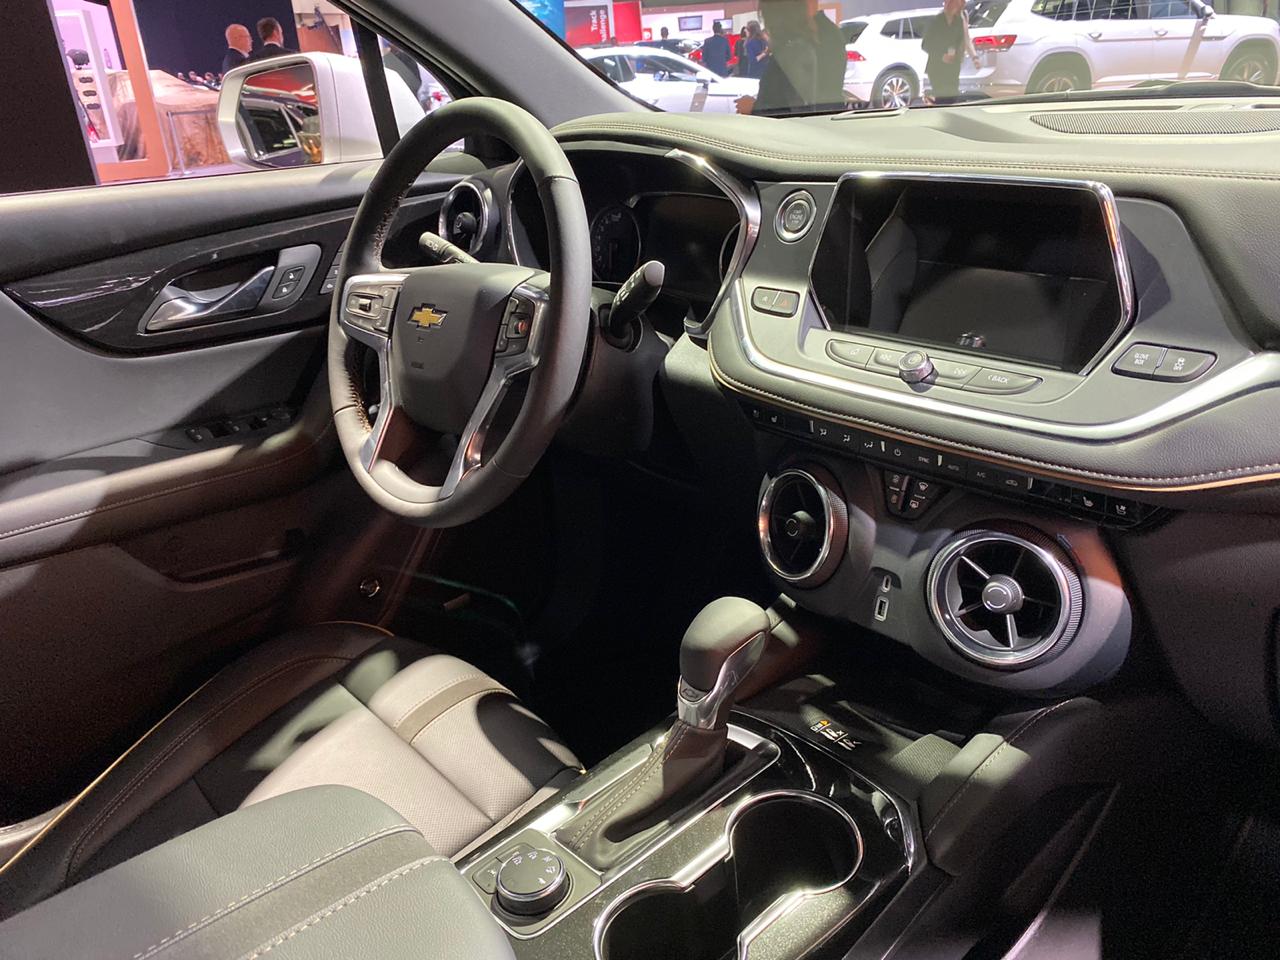 Cabine do novo Chevrolet Blazer exposto em Los Angeles traz tela multimídia destacada do painel e saídas de ar circulares que simulam hélices